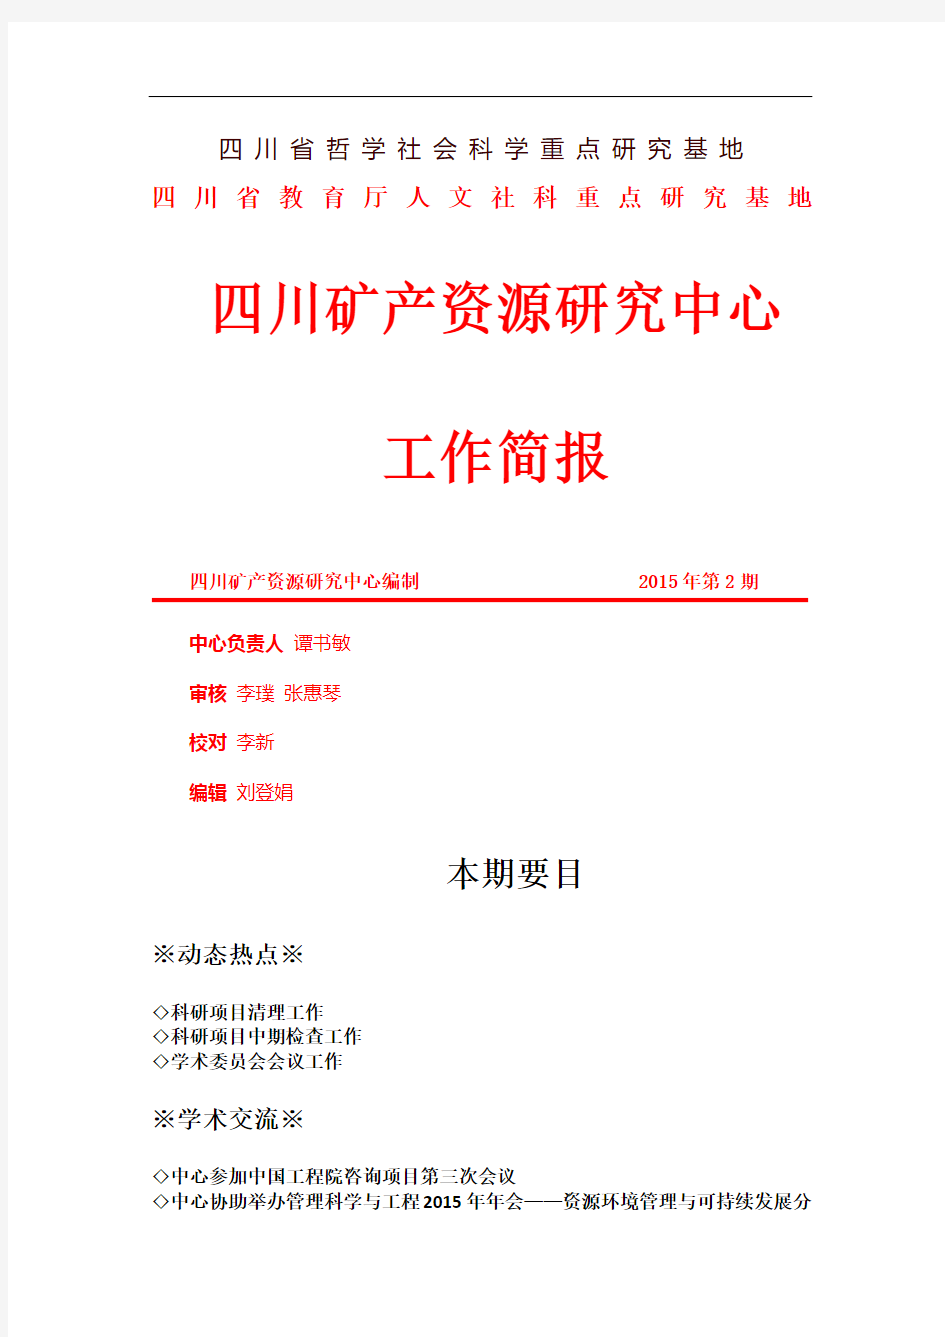 红头第一页彩打-四川矿产资源研究中心-成都理工大学